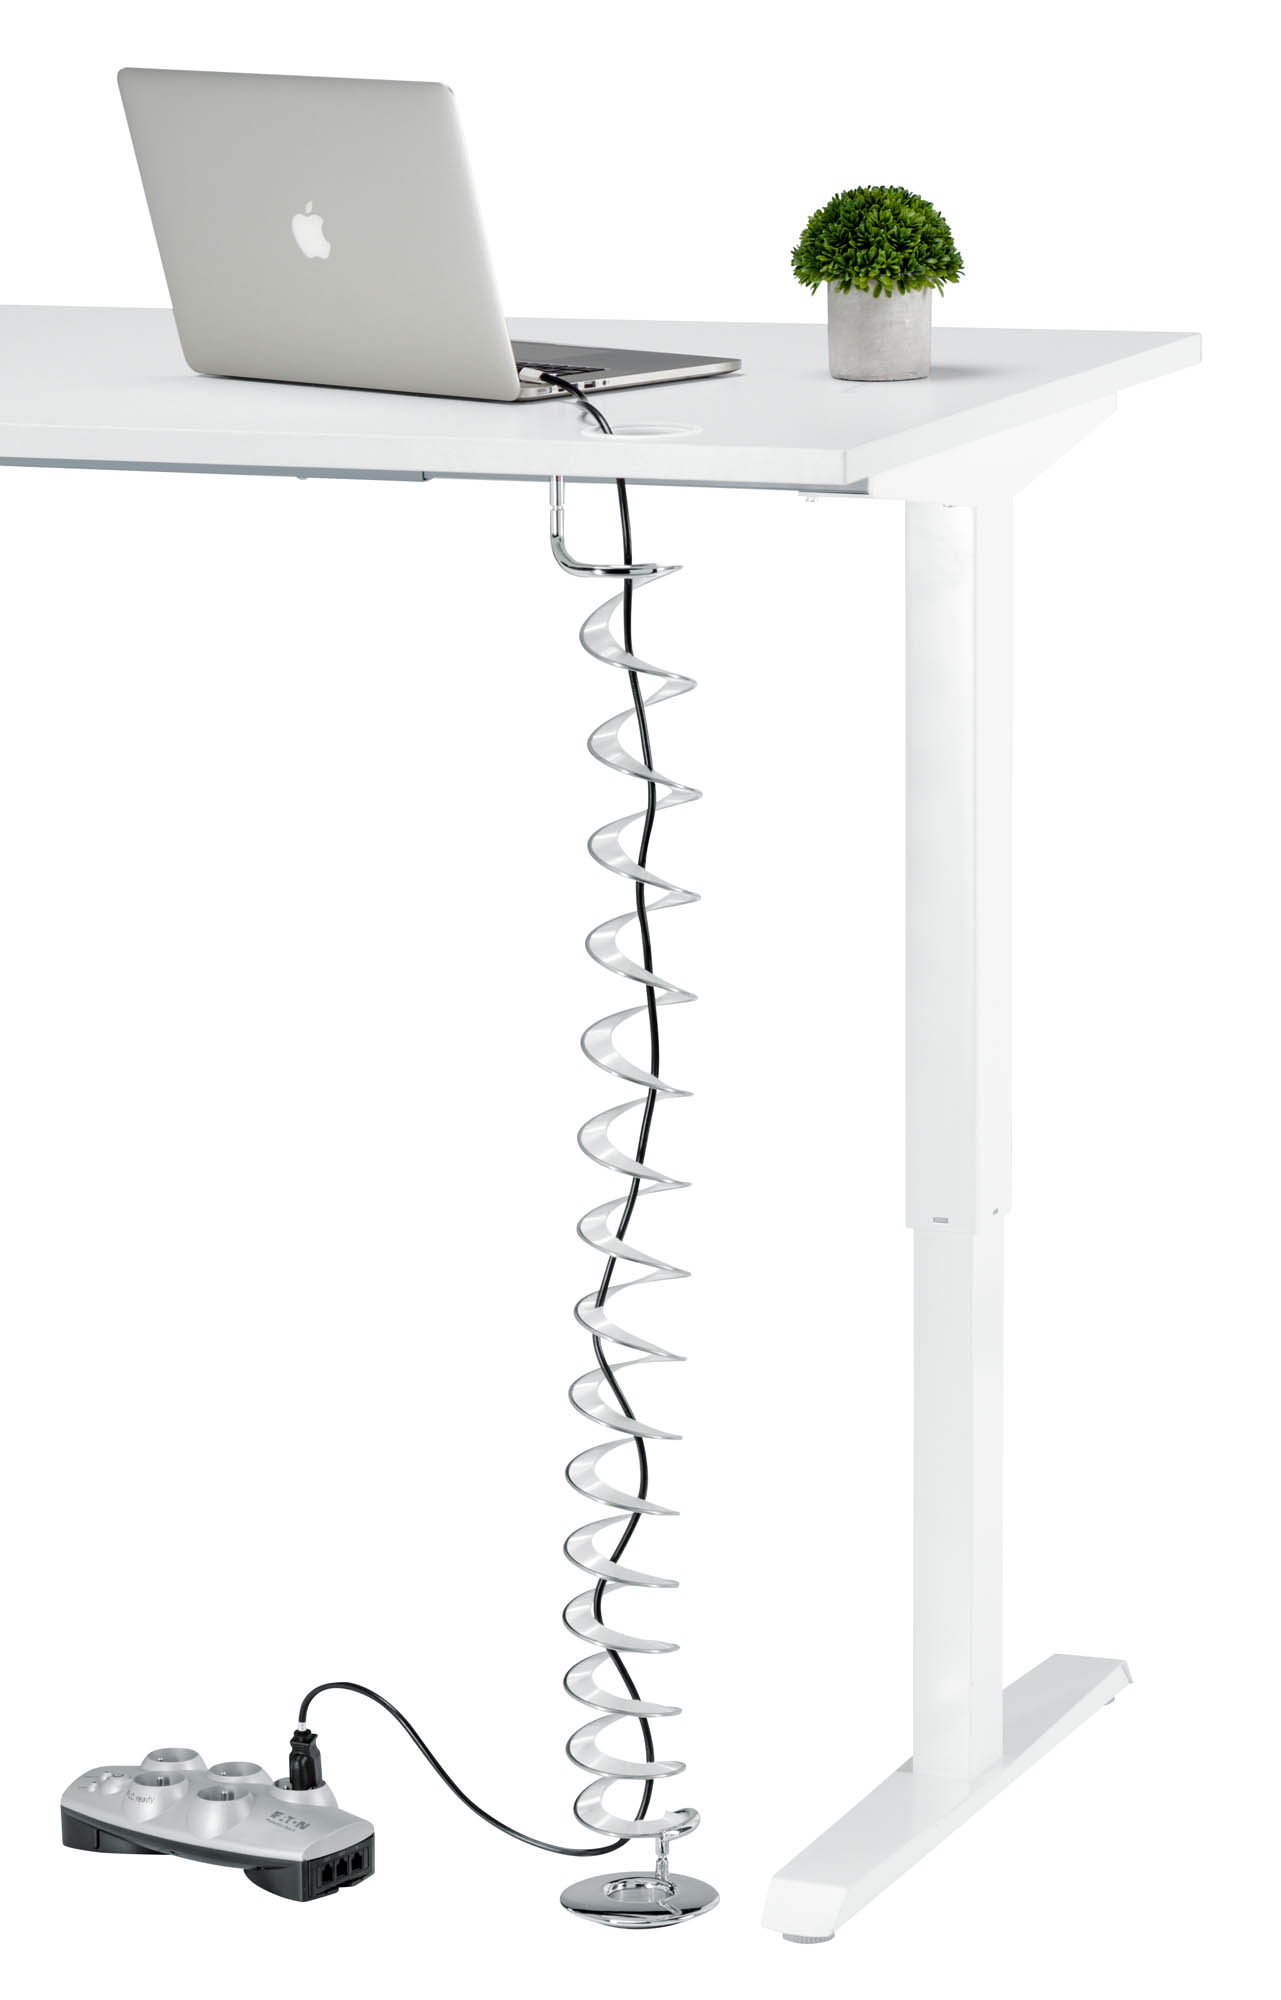 Goulotte passe-câbles verticale H 58 cm - Team line, tout le mobilier.